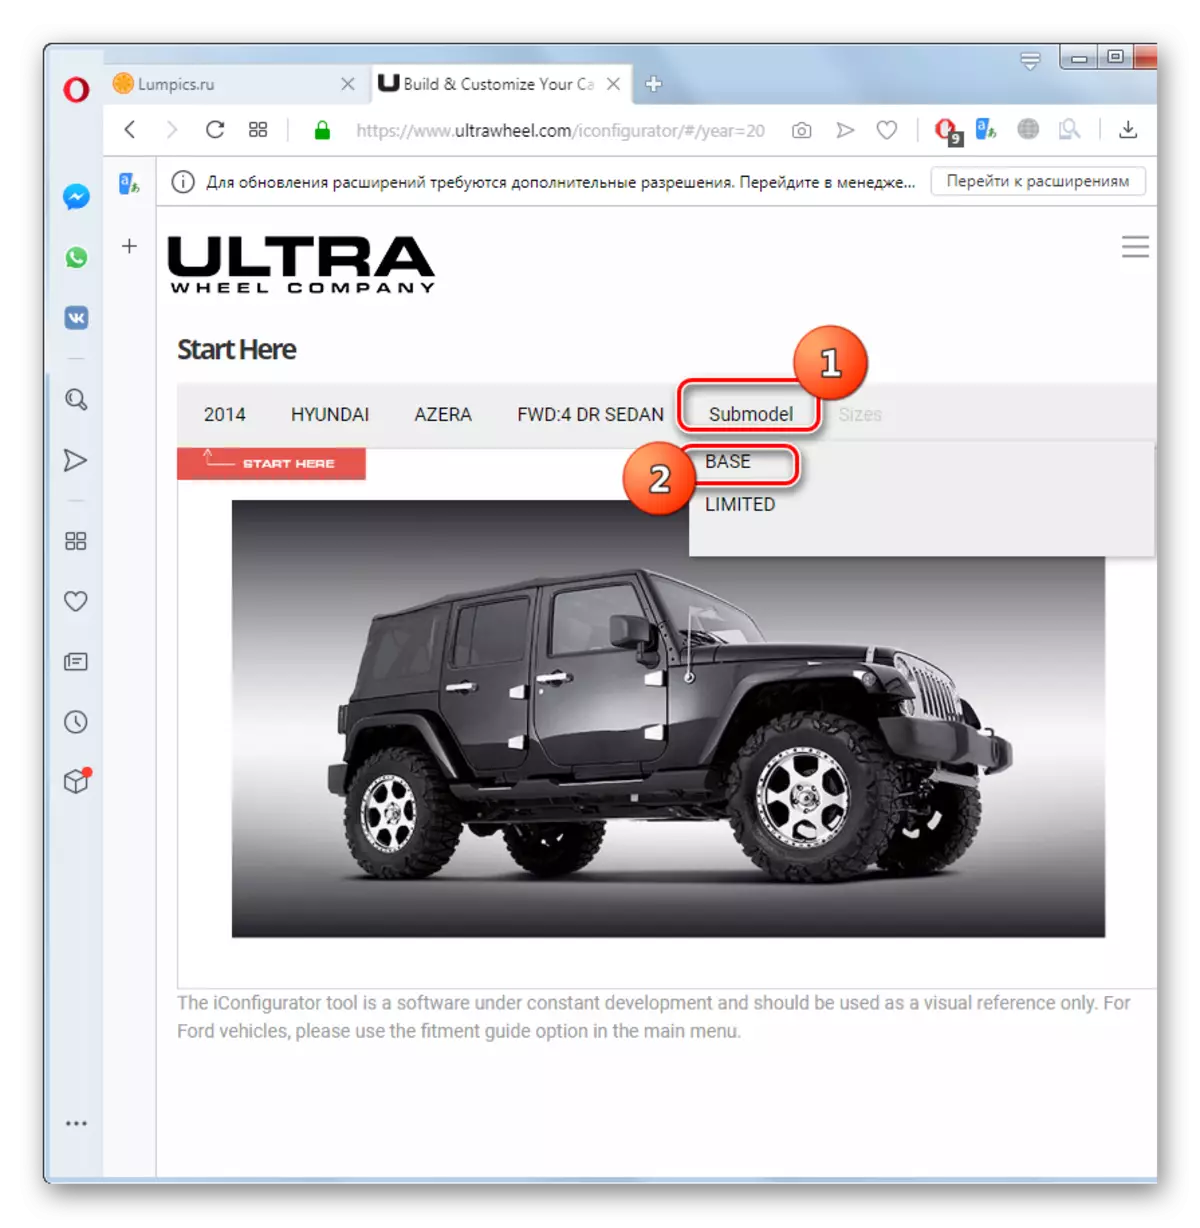 Különböző autómodell kiválasztása az ultrawheel weboldalon az Opera böngészőben